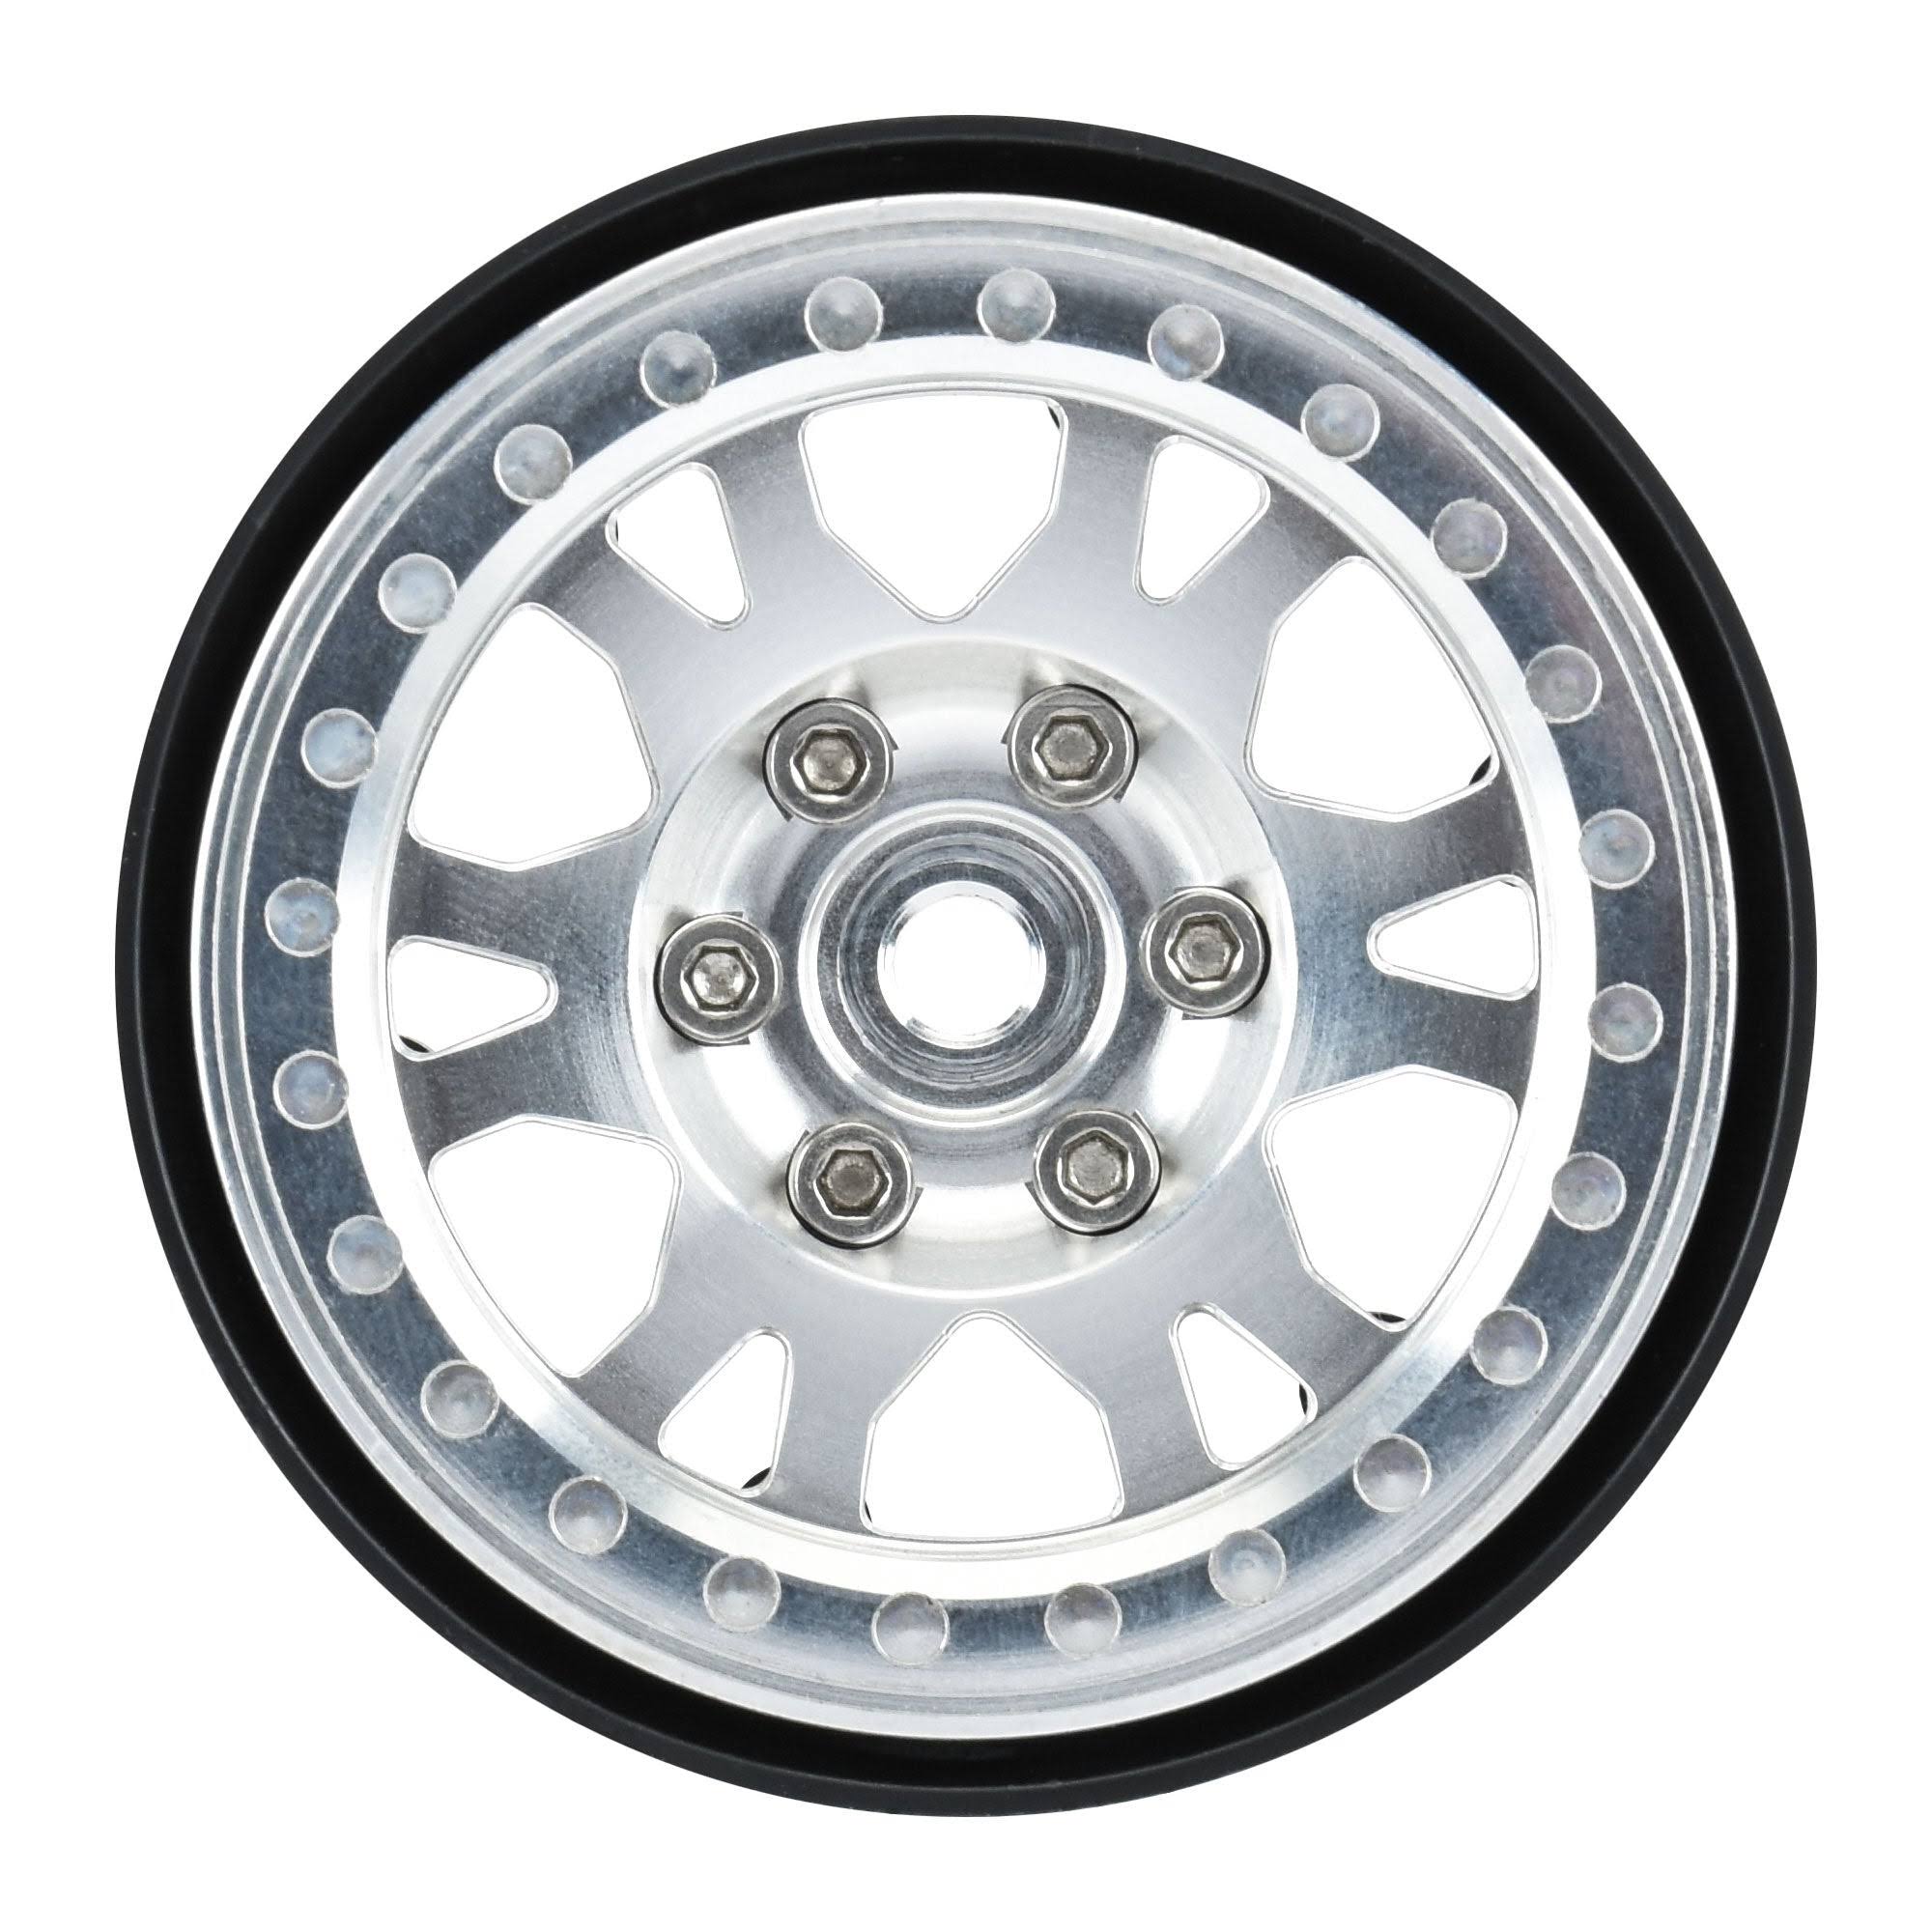 Proline Impulse 1.9in Aluminum Bead-Lock Crawler Wheels, F/R, PR2790-00